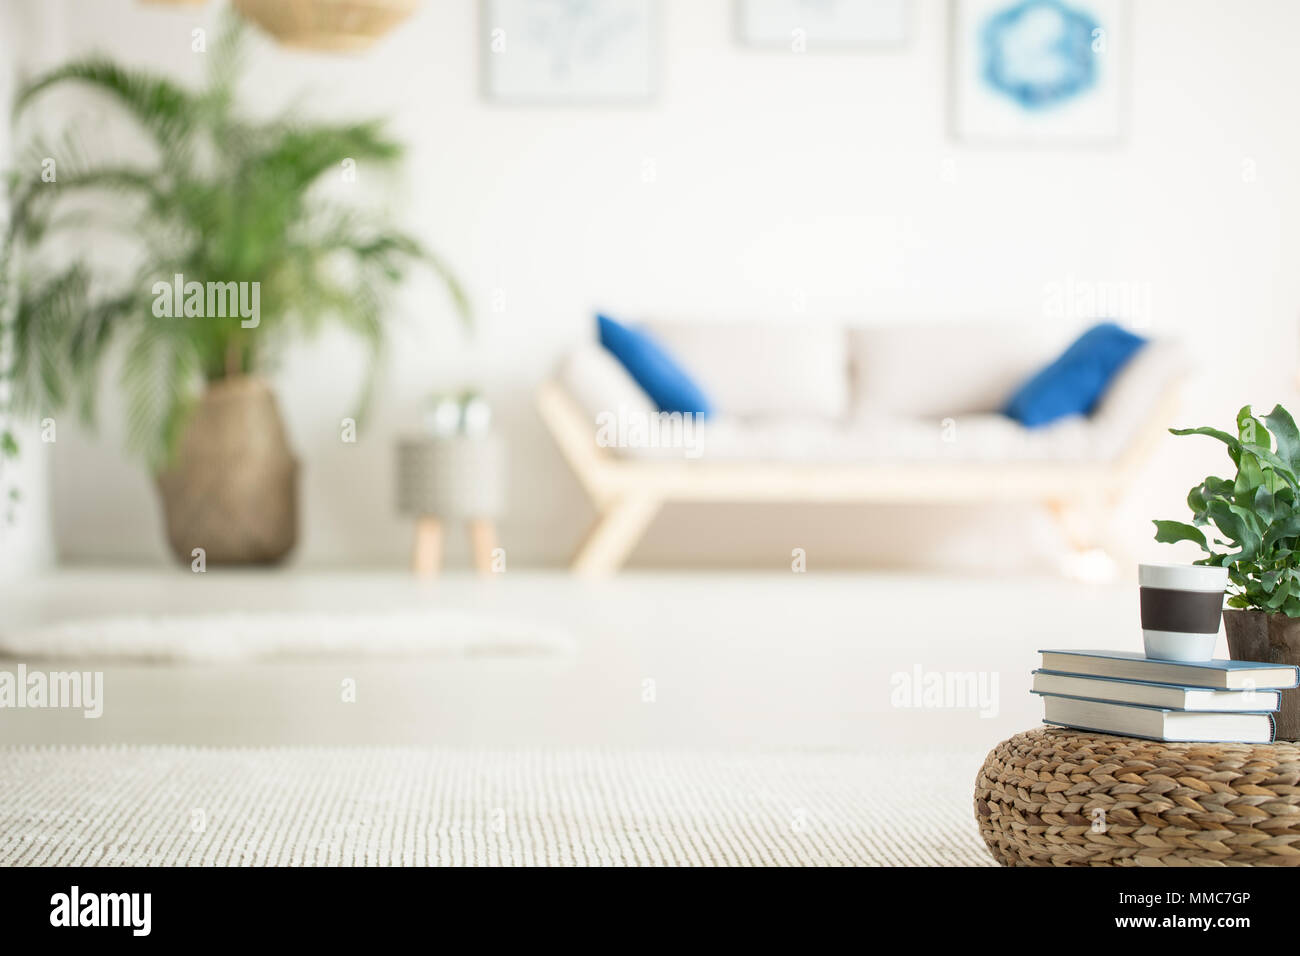 Elegante appartamento bianco con divano in legno, impianti e rattan pouf Foto Stock